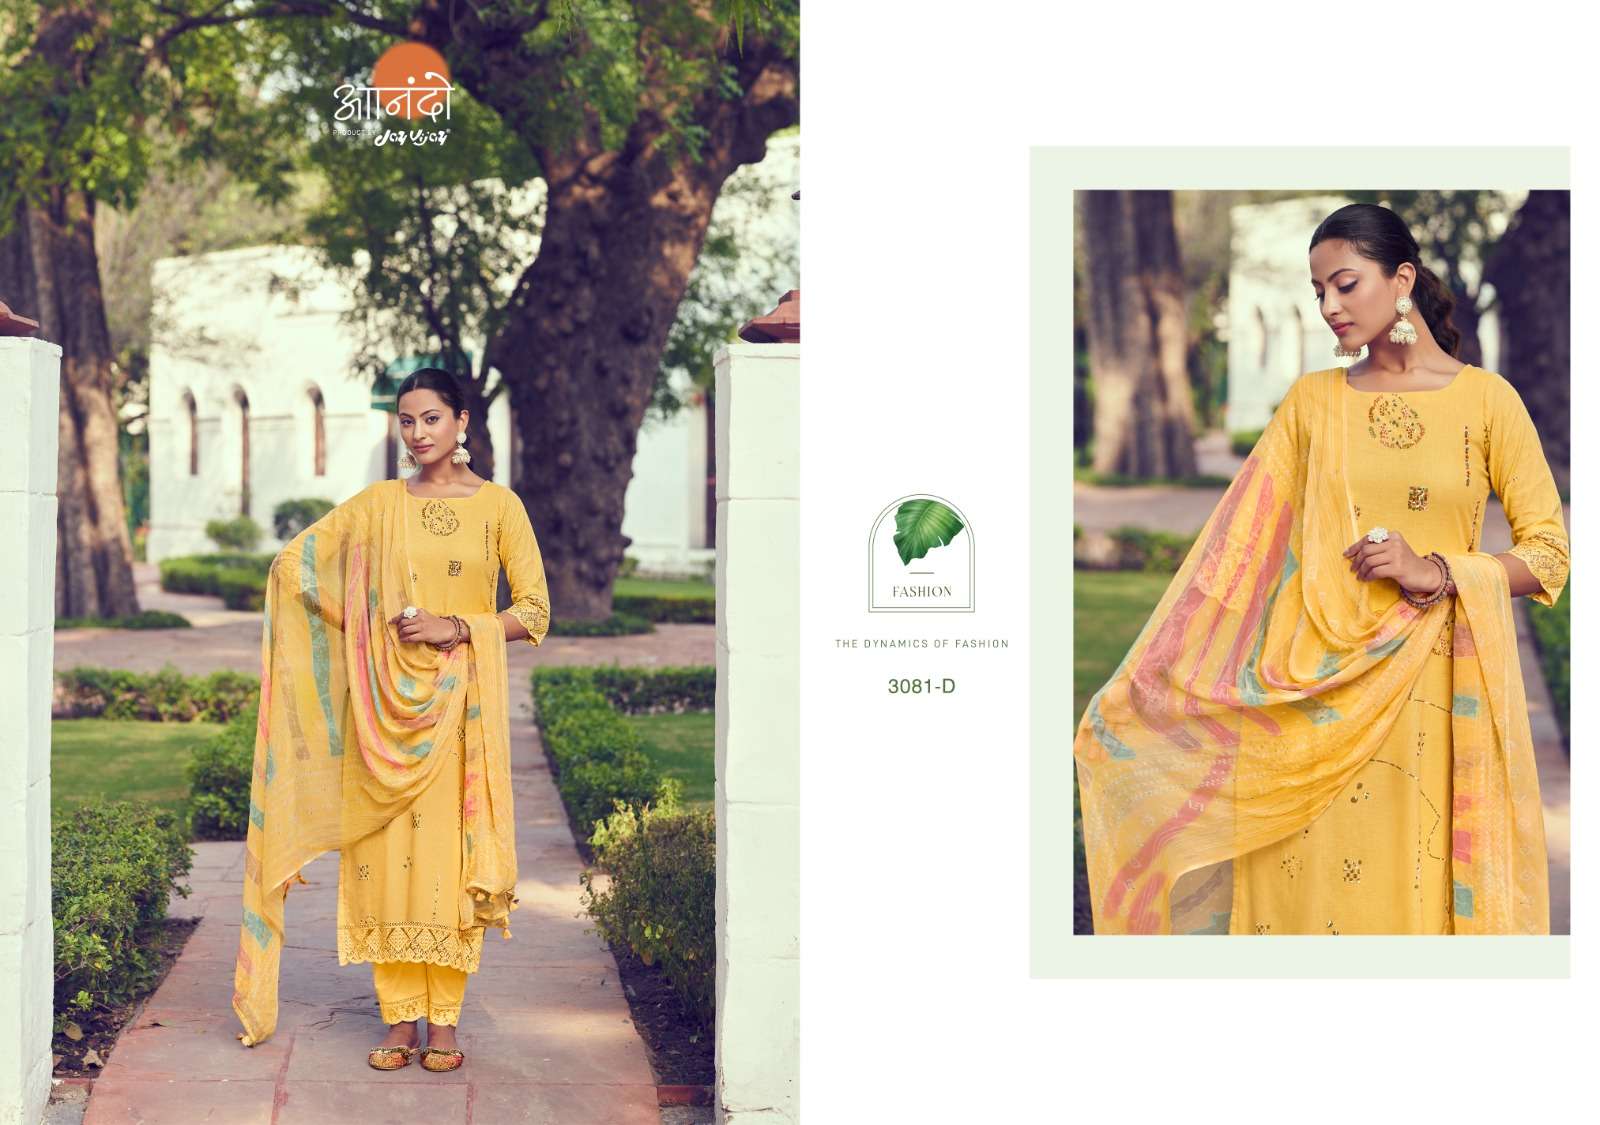 jayvijay lenora 3081 series exclusive designer salwar kameez catalogue wholesaler surat